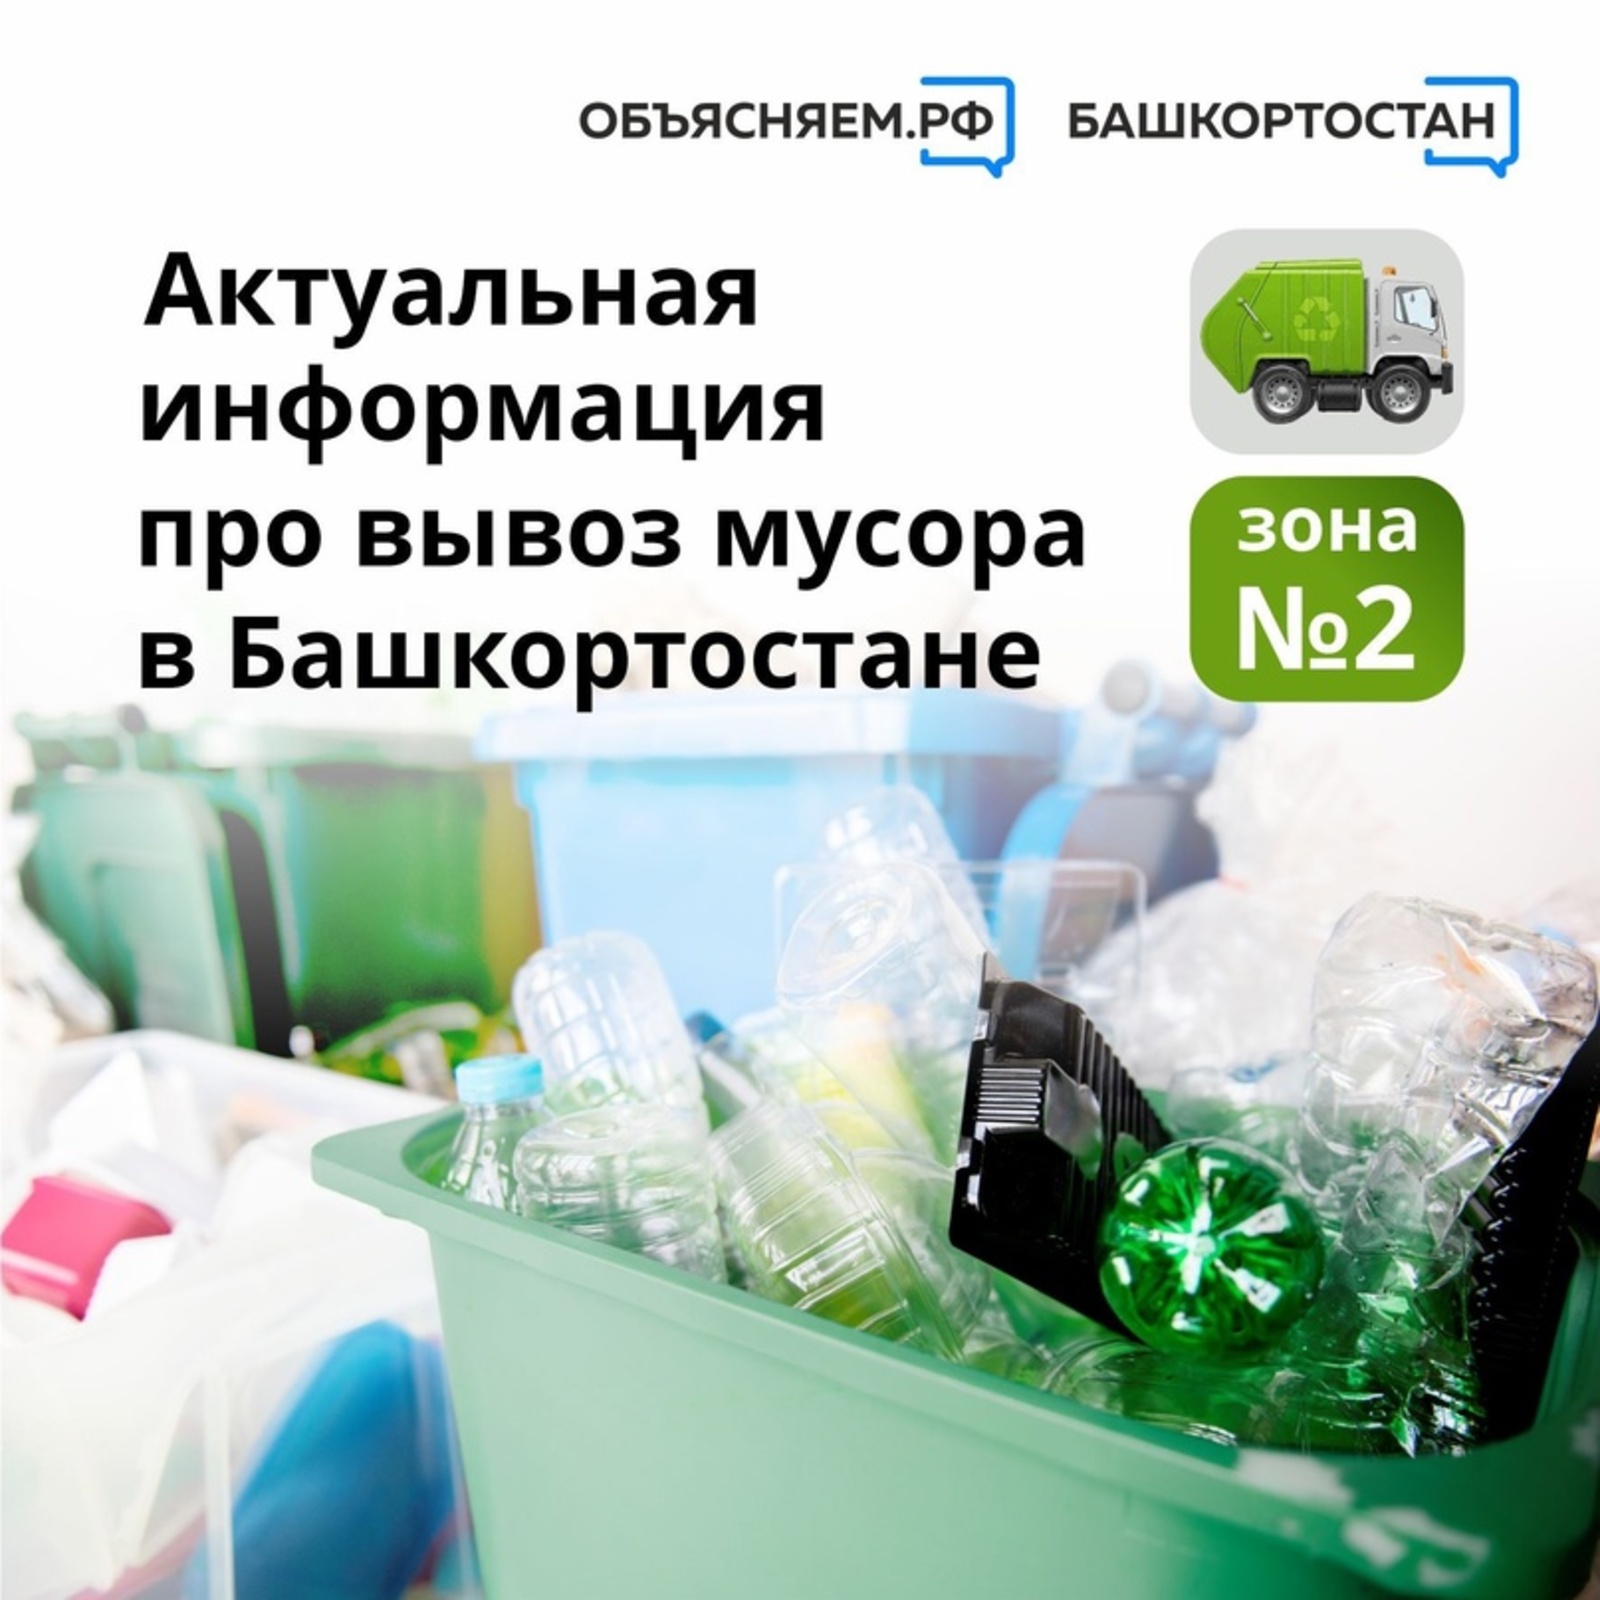 Объясняем. Башкортостан, пост: Актуальная информация про вывоз мусора в Башкортостане в зоне № 2